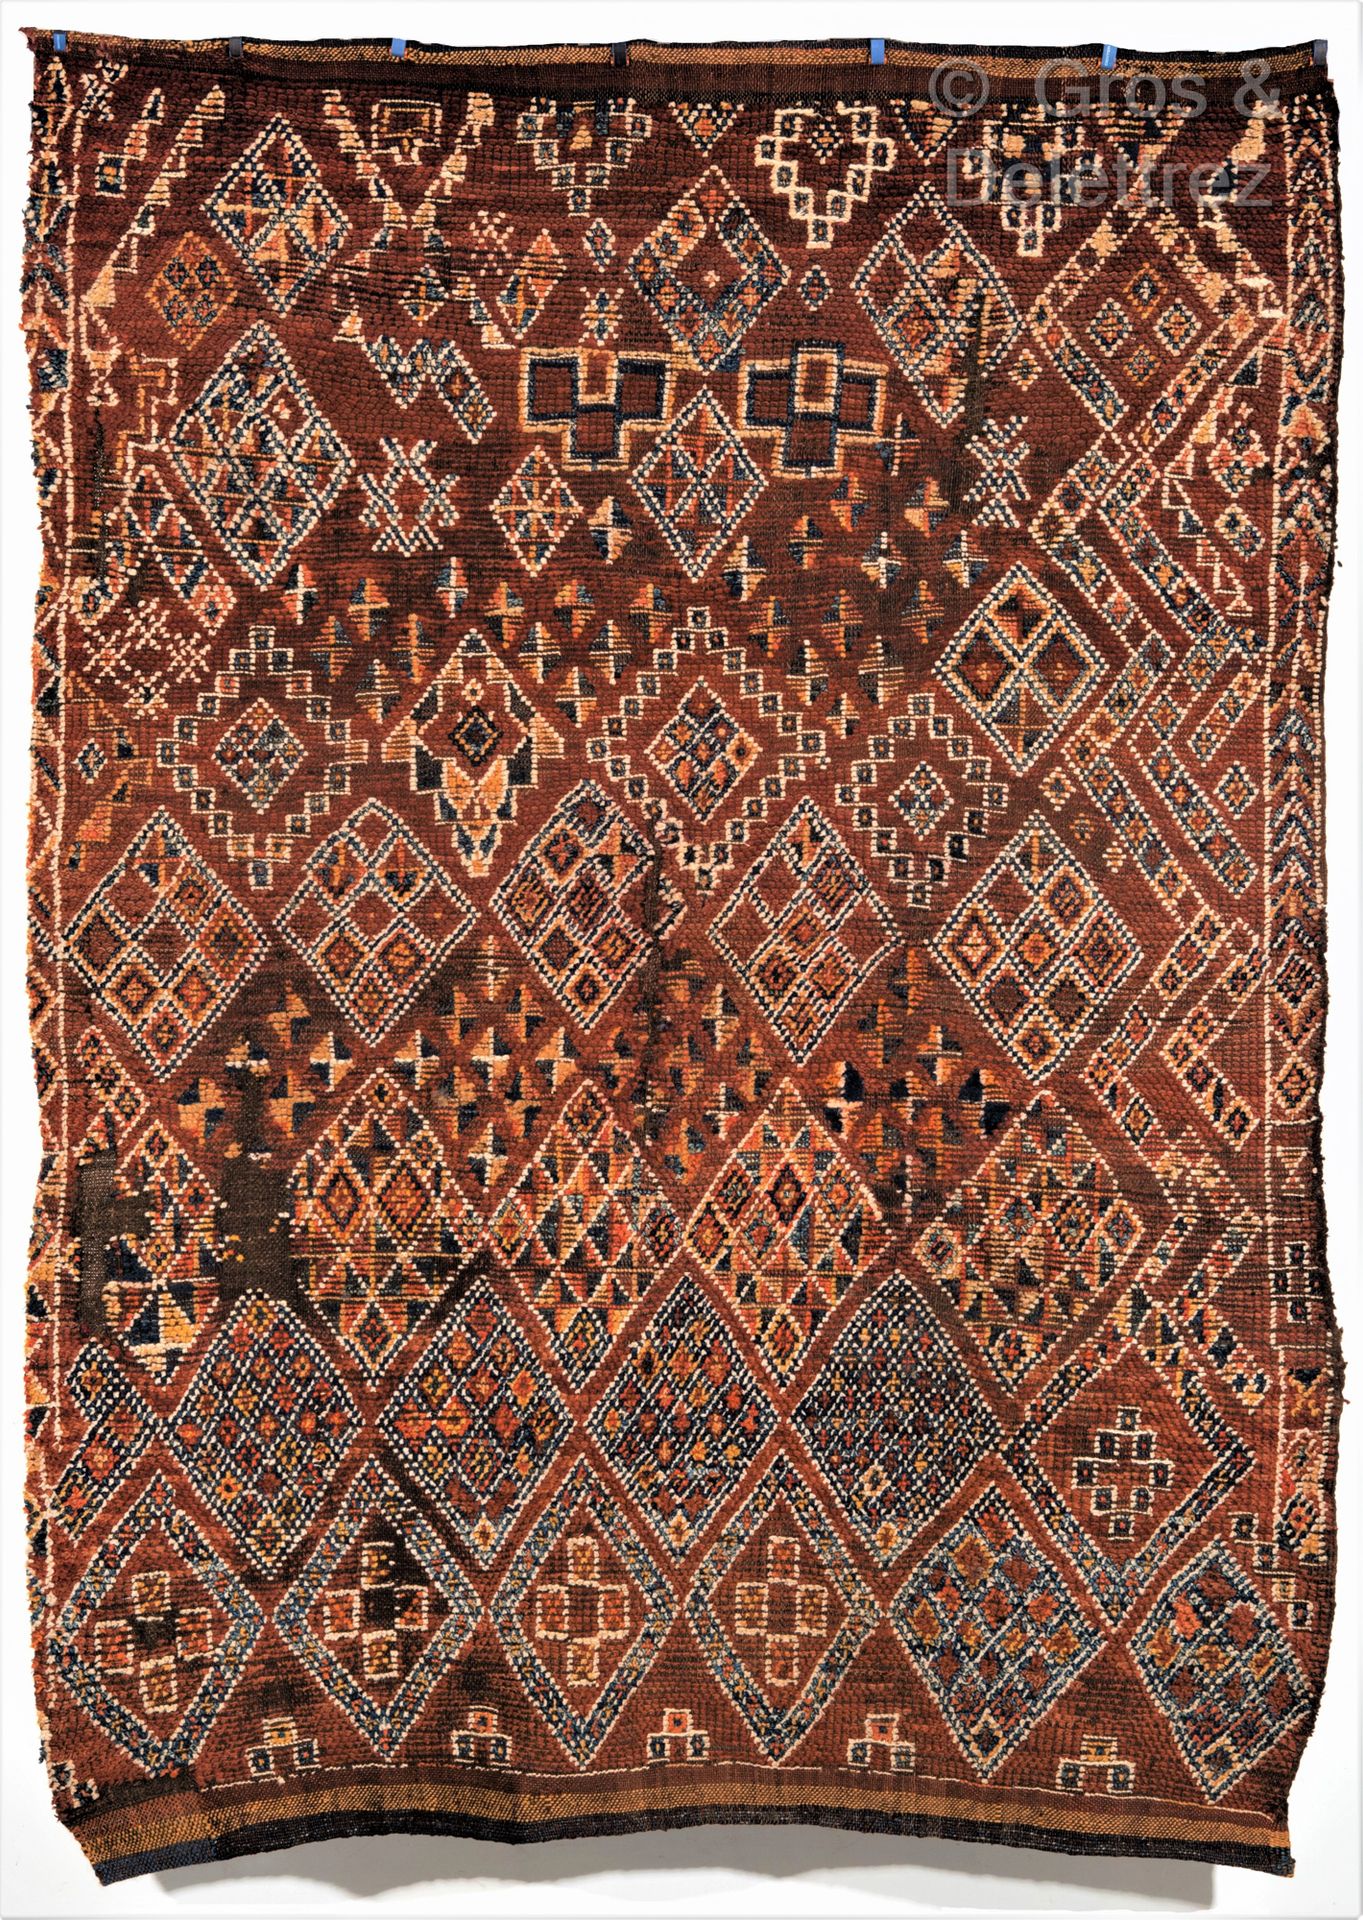 Null Ein wichtiger und sehr alter Teppich aus Ostmarokko, Marokko.

An important&hellip;